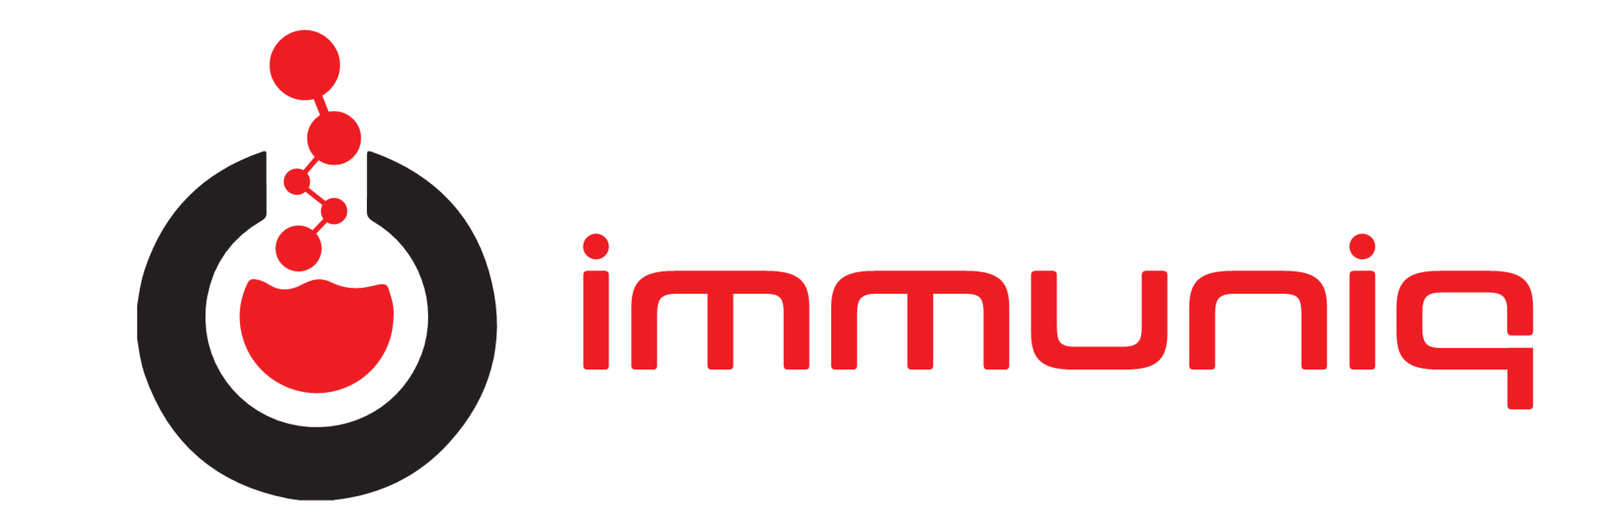 immuniq_logo.png